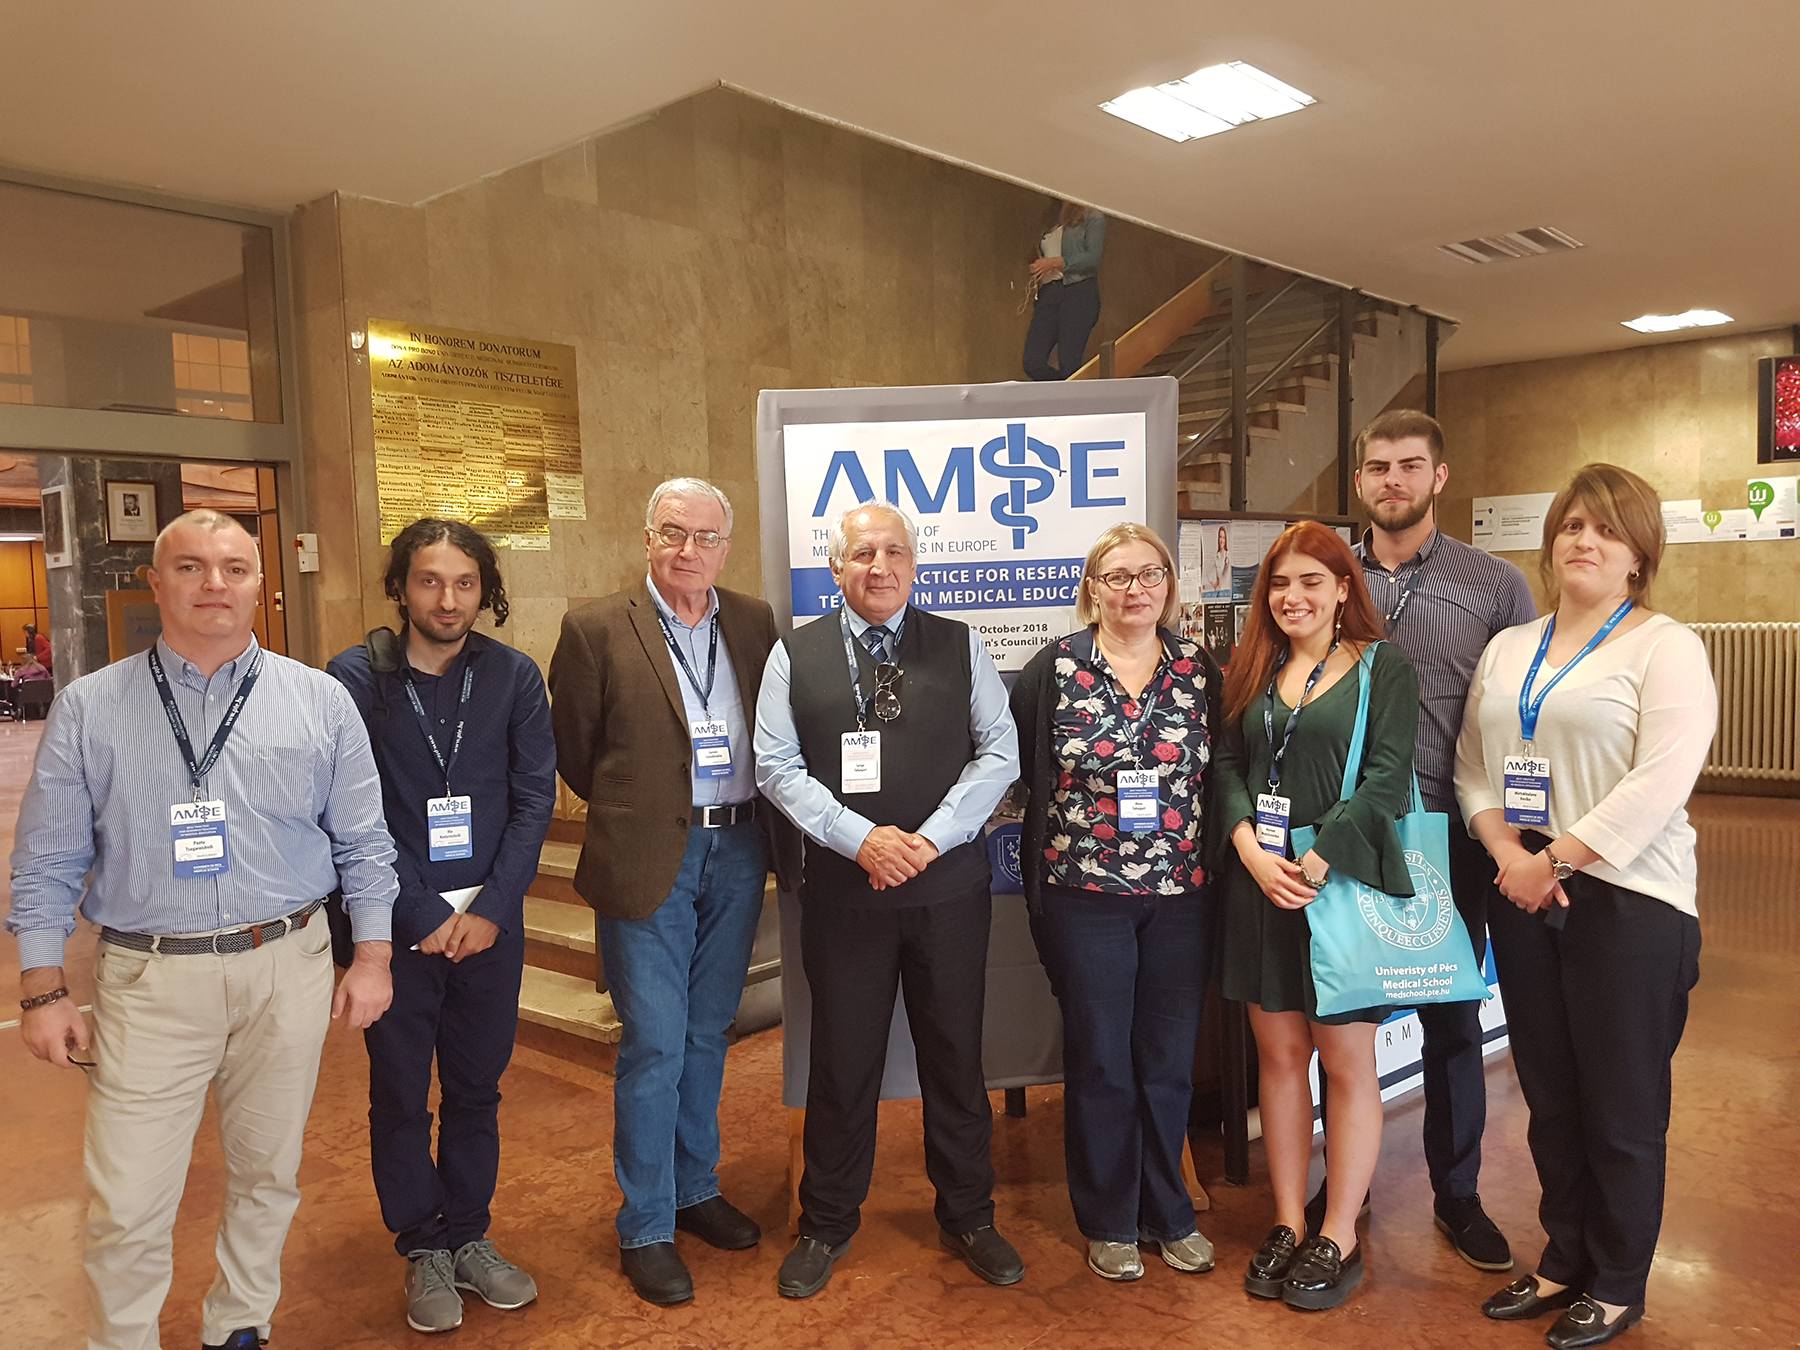 ევროპის სამედიცინო სკოლათა ასოციაციის (AMSE)-ის კონფერენცია  ქ. პეჩში, უნგრეთში